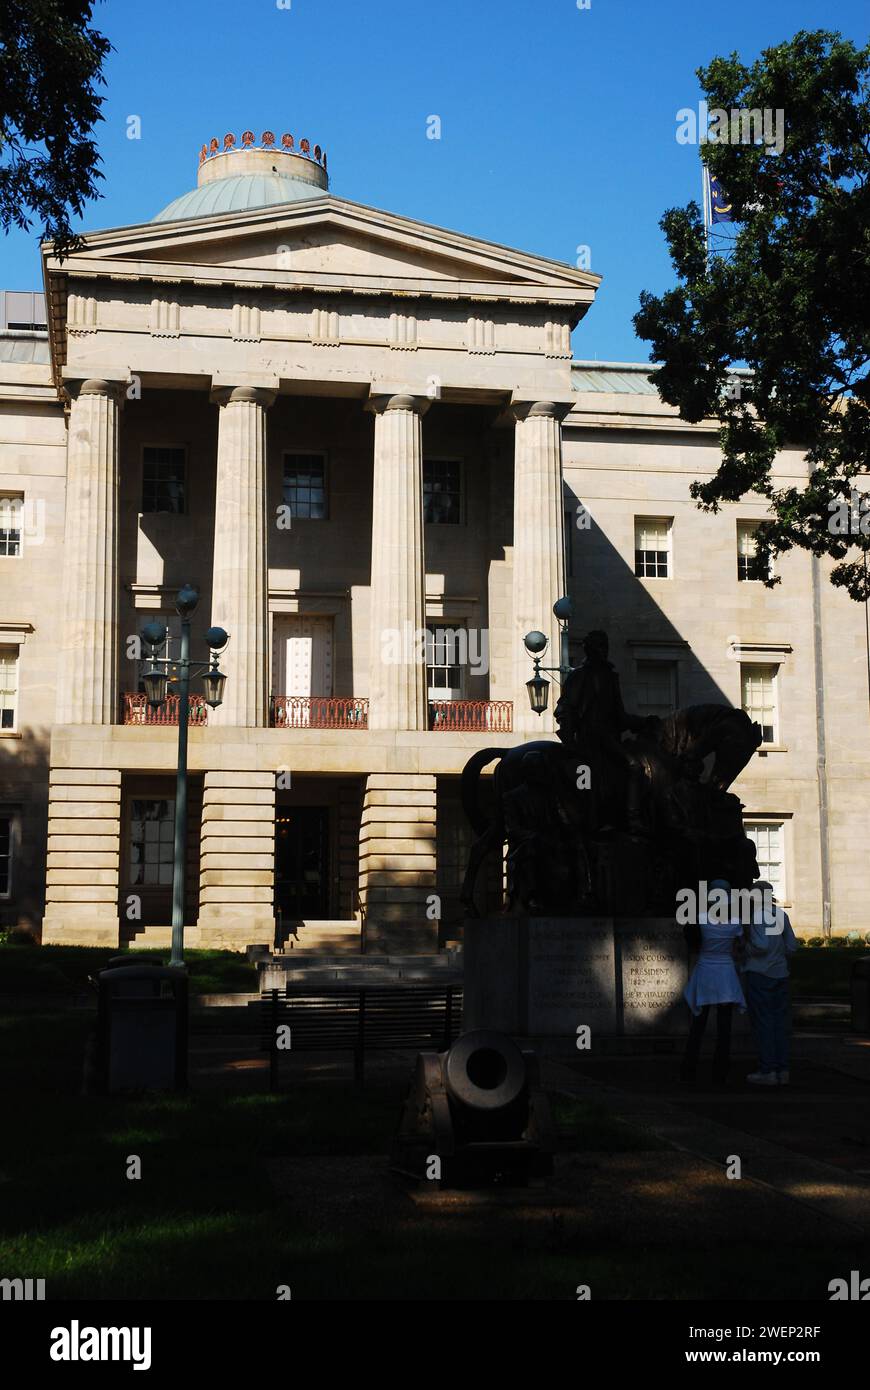 Am Eingang zum North Carolina State Capitol in Raleigh stehen große Säulen Stockfoto